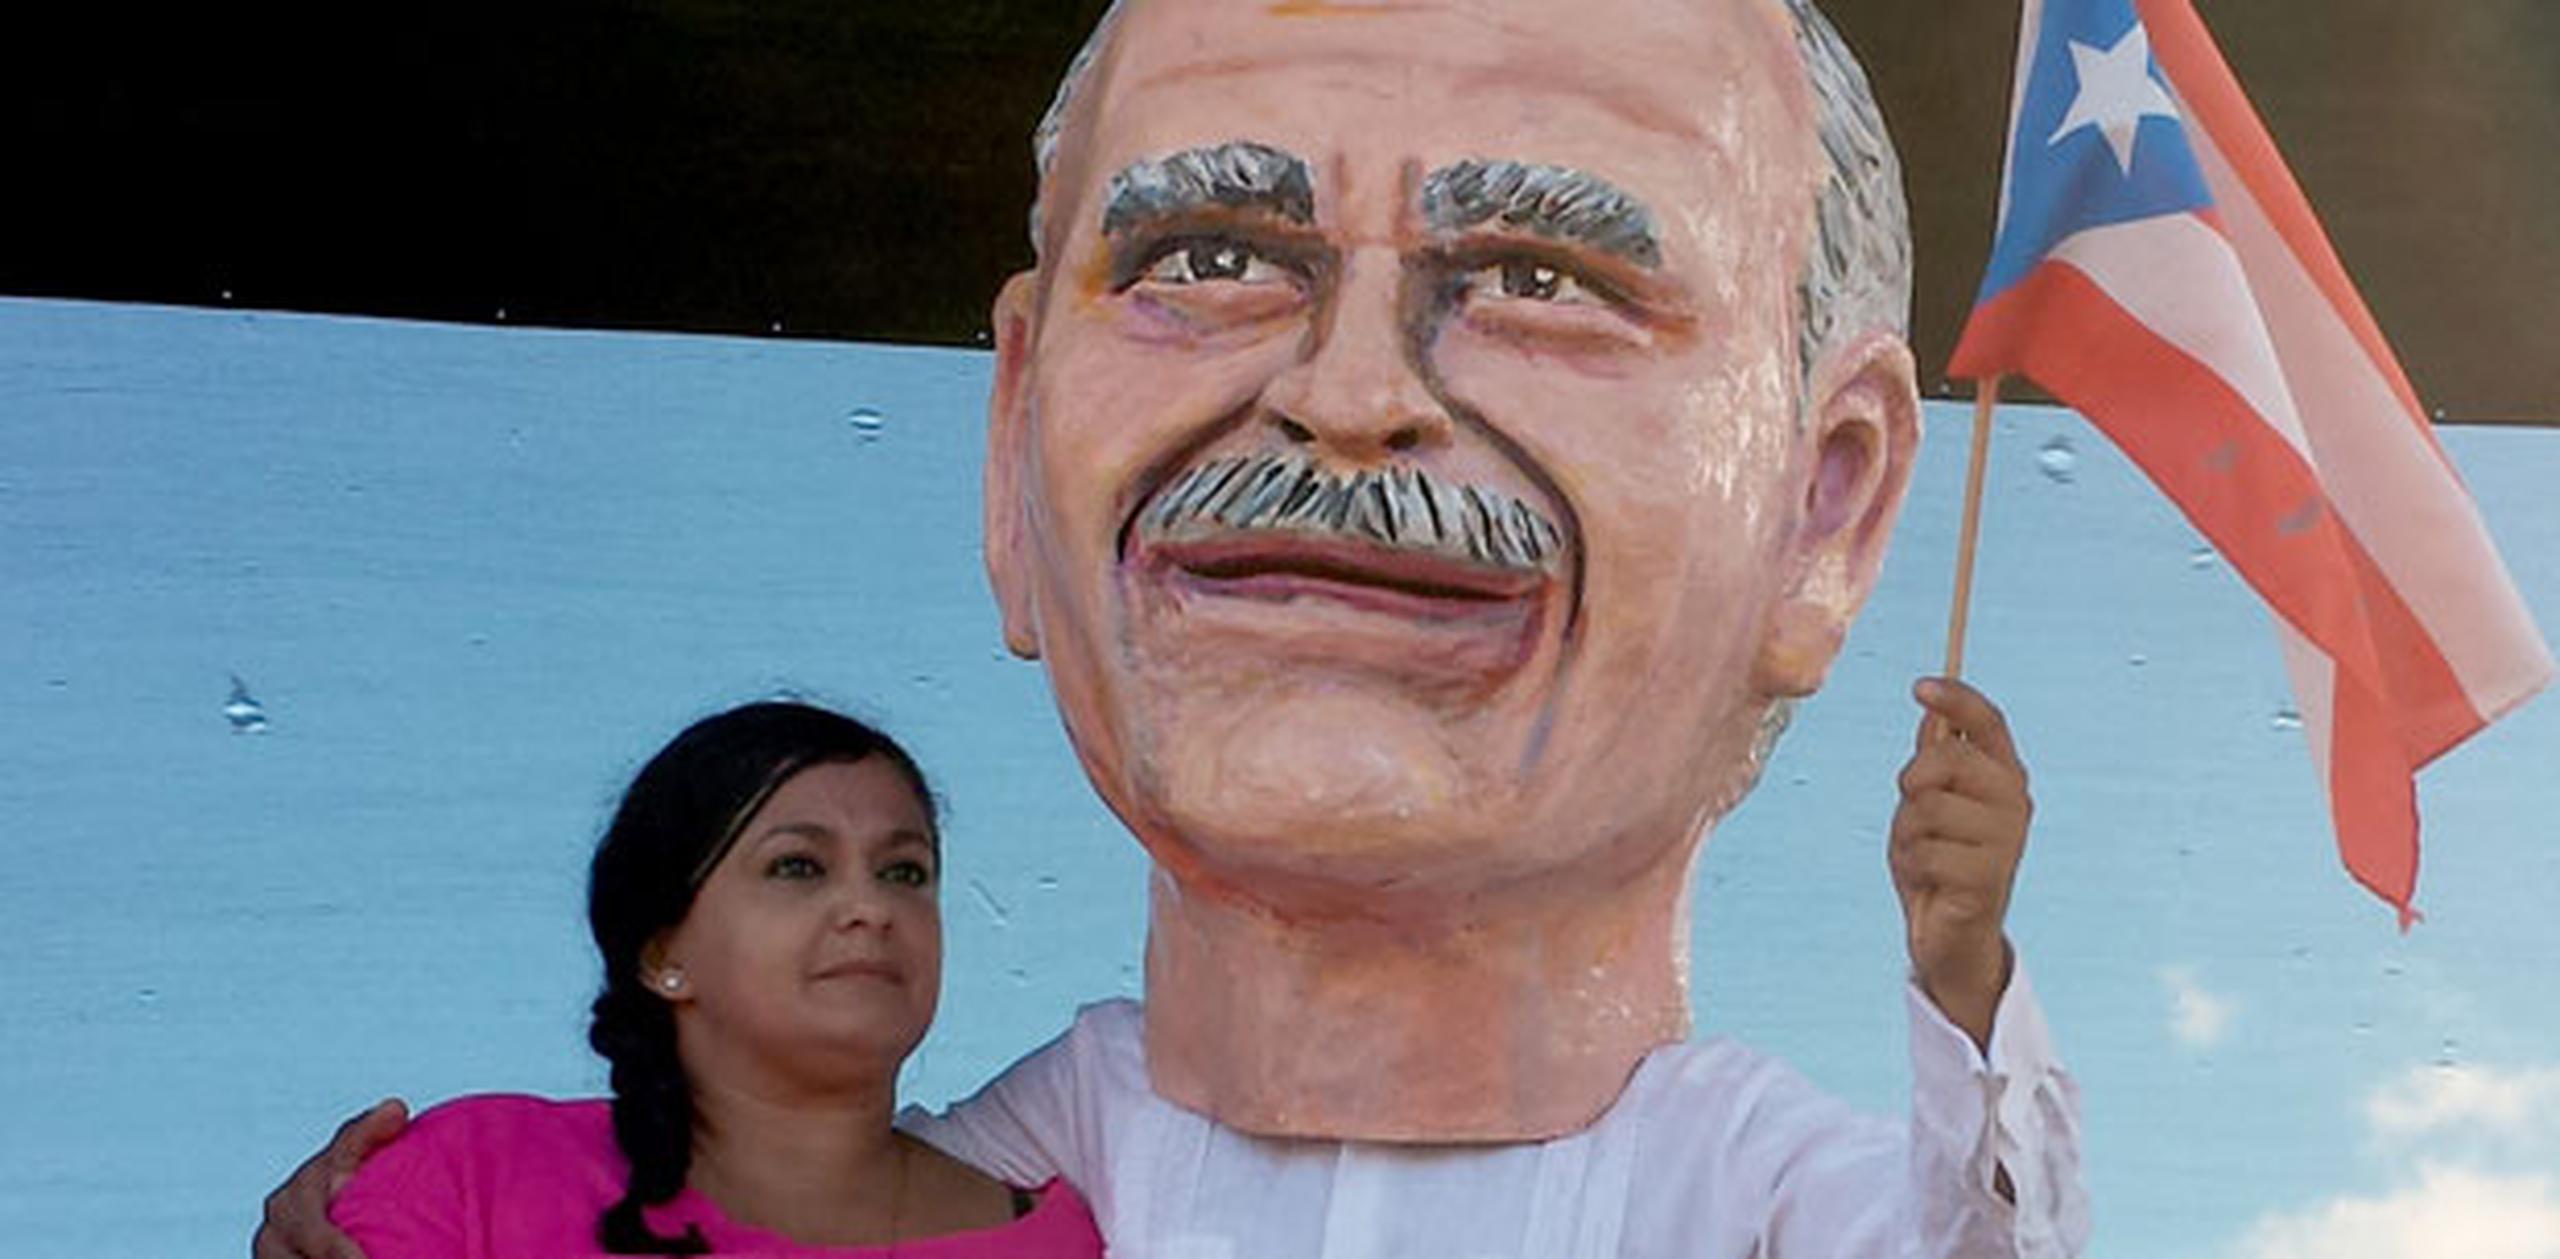 Puertorriqueños de todas las ideologías y líderes mundiales, entre ellos el presidente de Uruguay, José Mujica, han pedido al presidente Obama que le permita a López Rivera “regresar a casa”. (Archivo)